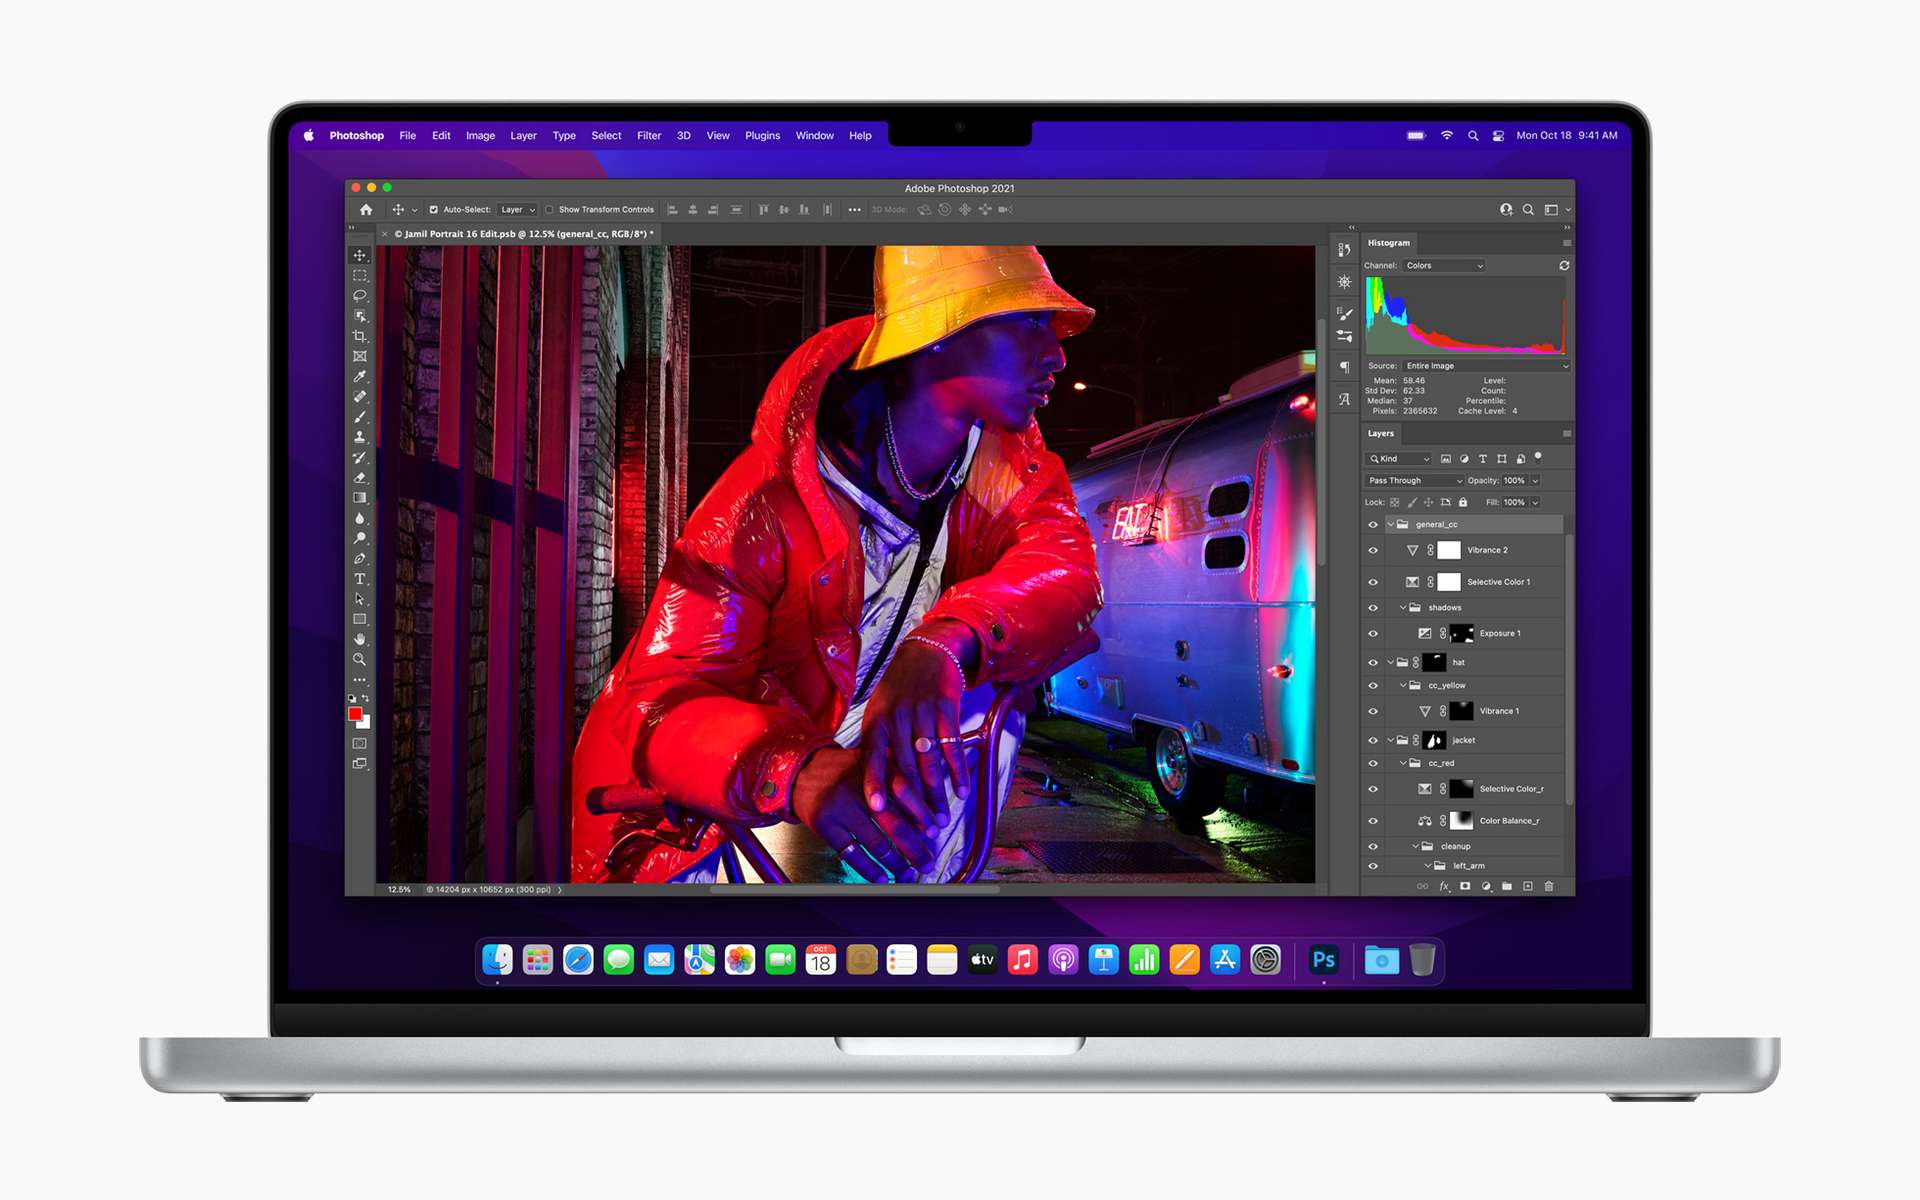 Le MacBook Pro 16 pouces avec l'application Photoshop. © Press photos, Apple